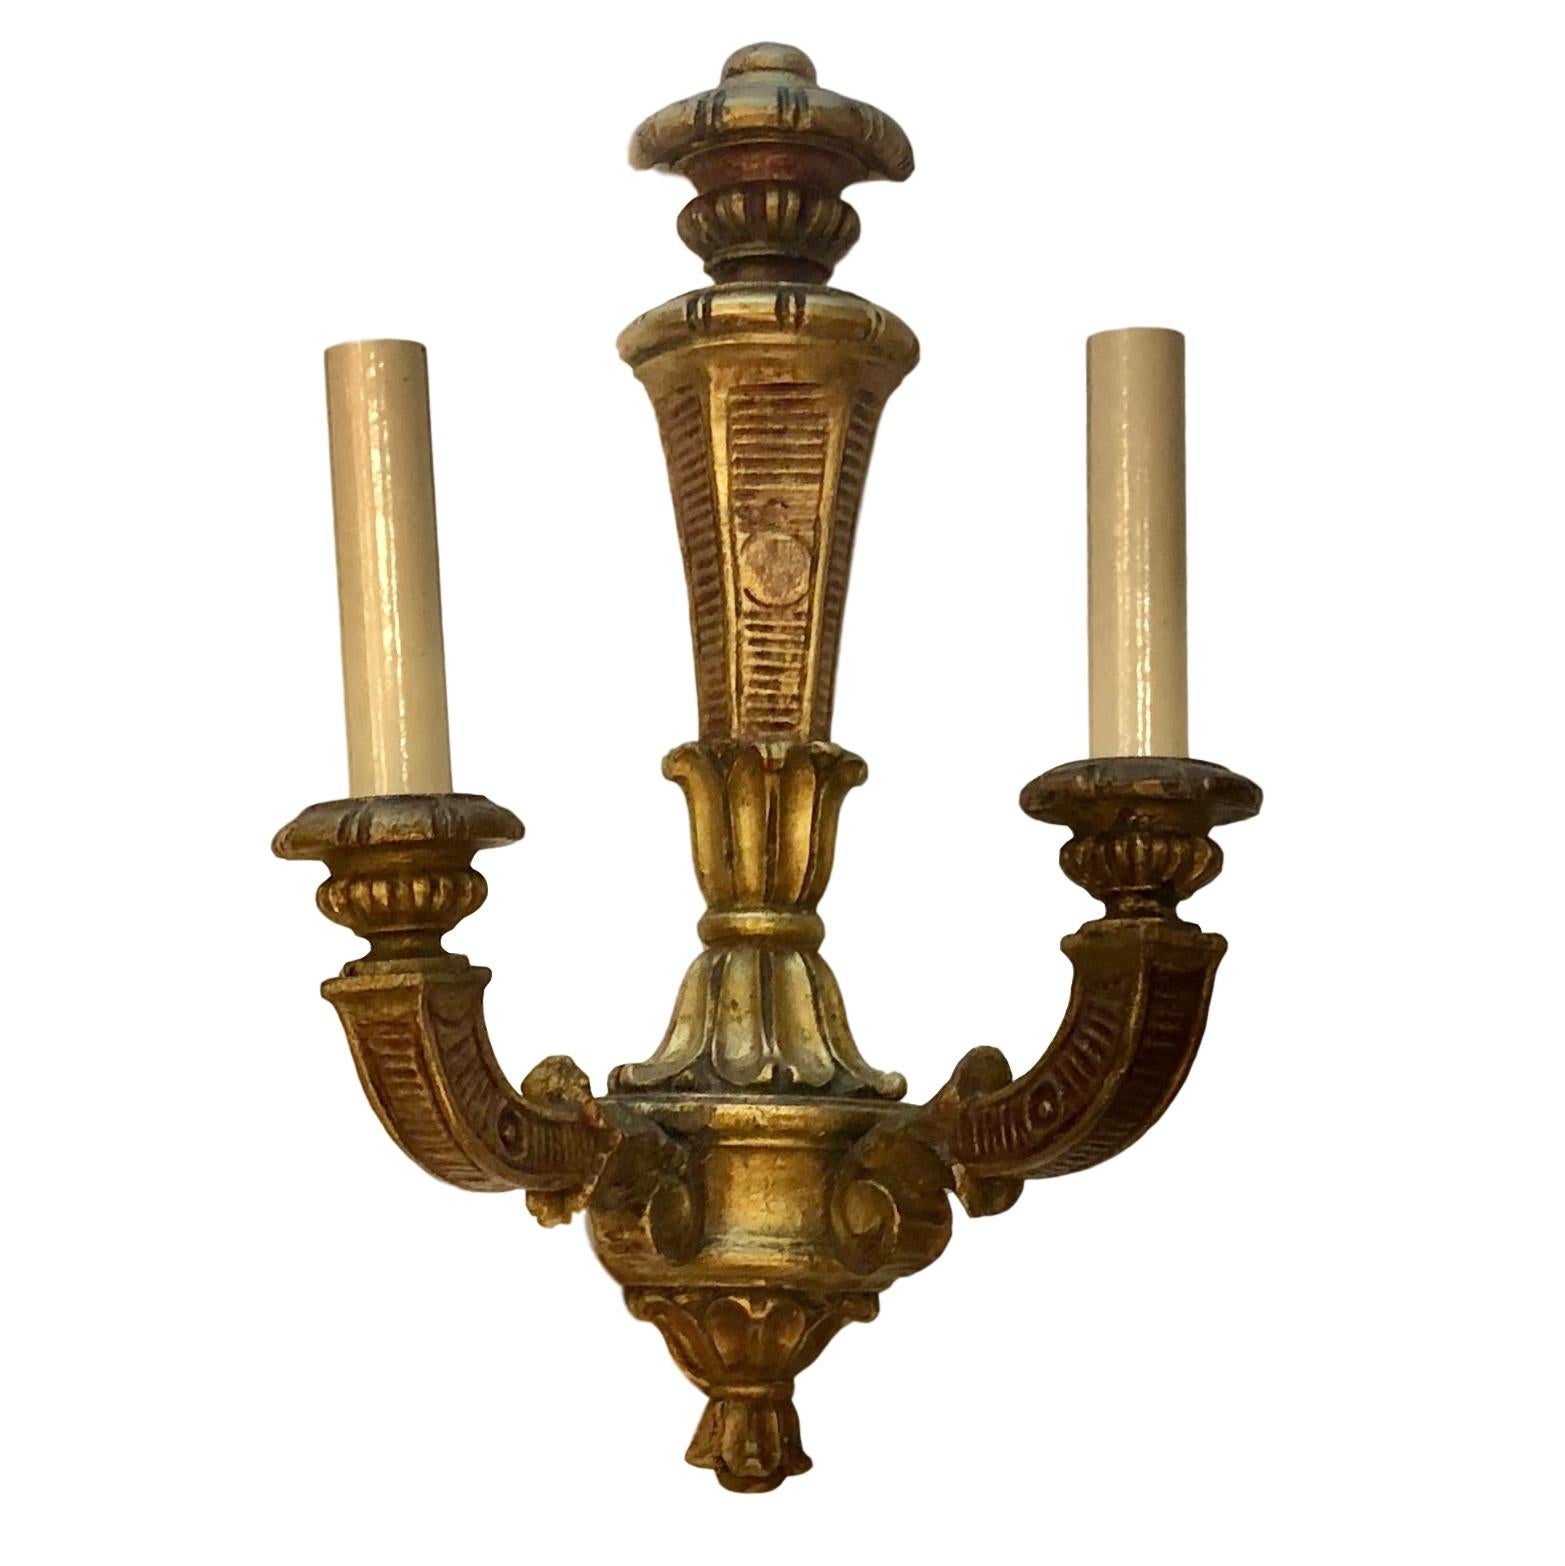 Une paire d'appliques en bois doré de style néoclassique français des années 1930, avec des détails peints.

Mesures :
Hauteur 15